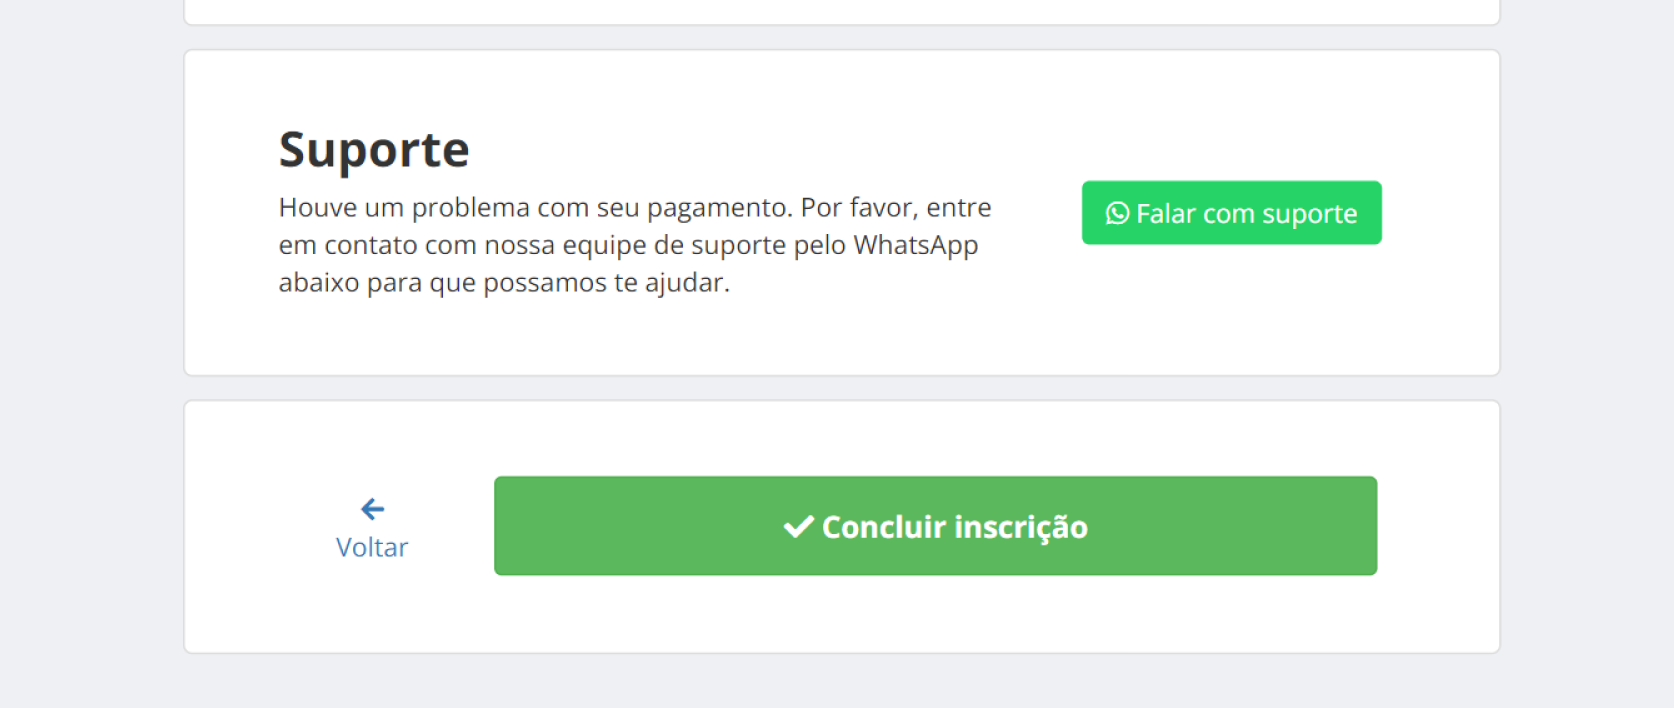 Exemplo de suporte pelo Whatsapp no Checkout da Even3